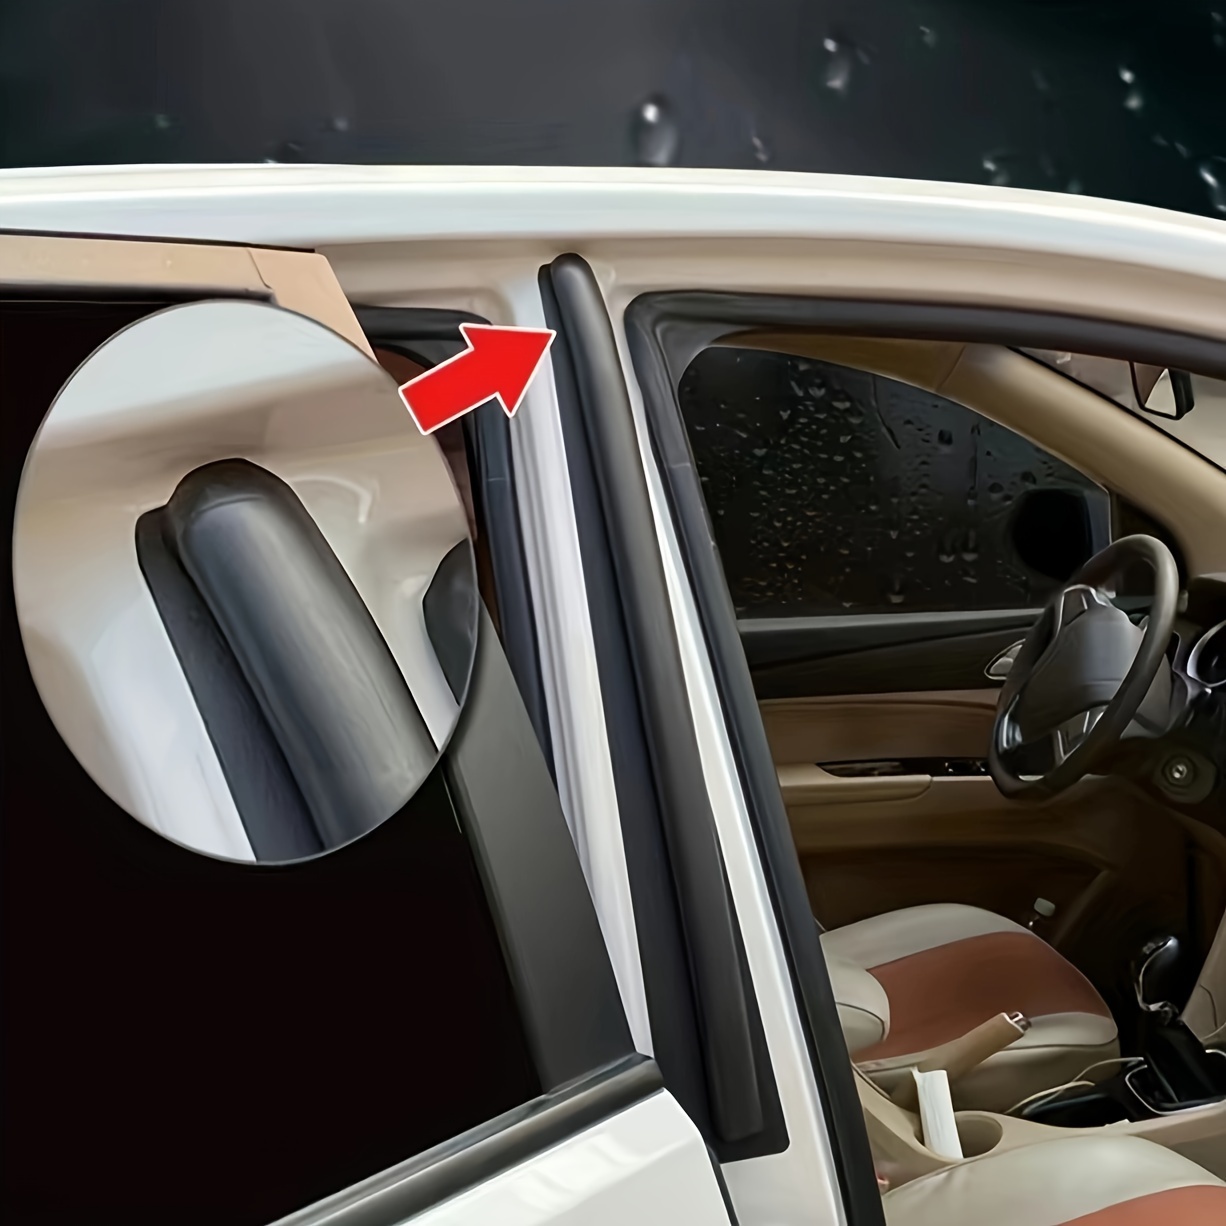 Auto-Gummi-Dichtung streifen Auto-Kofferraum deckel Spalt dichtung